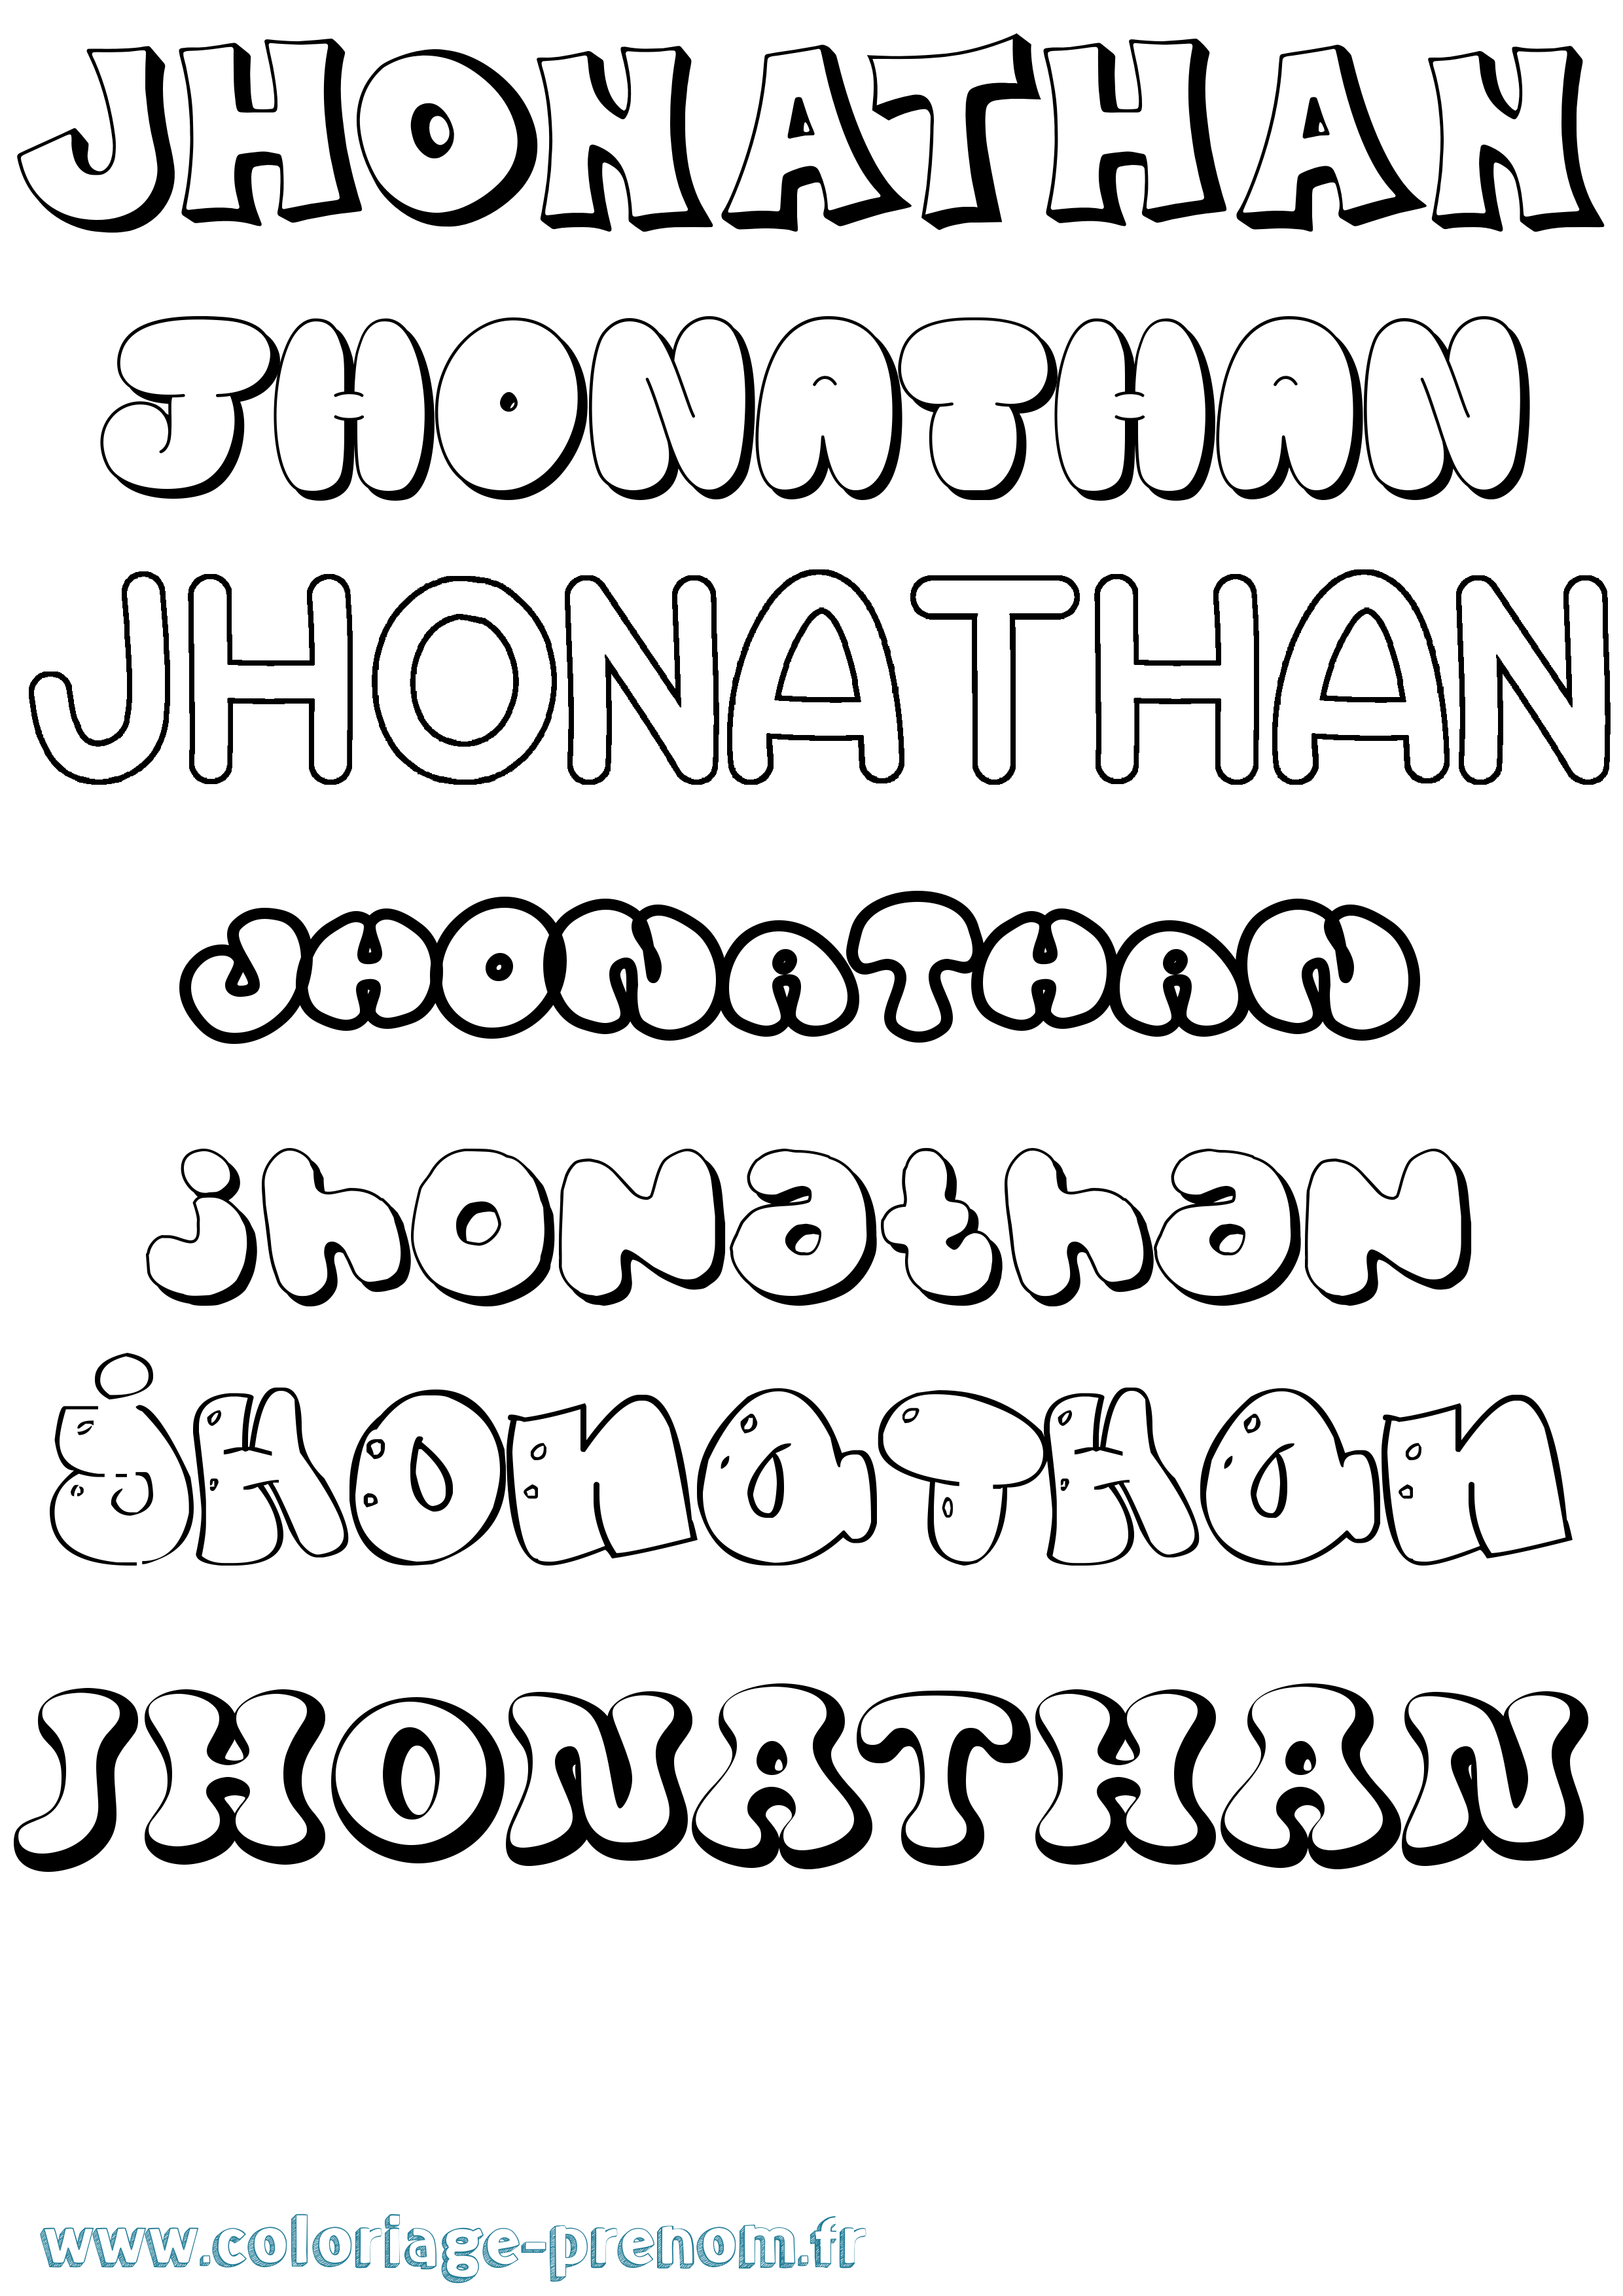 Coloriage prénom Jhonathan Bubble